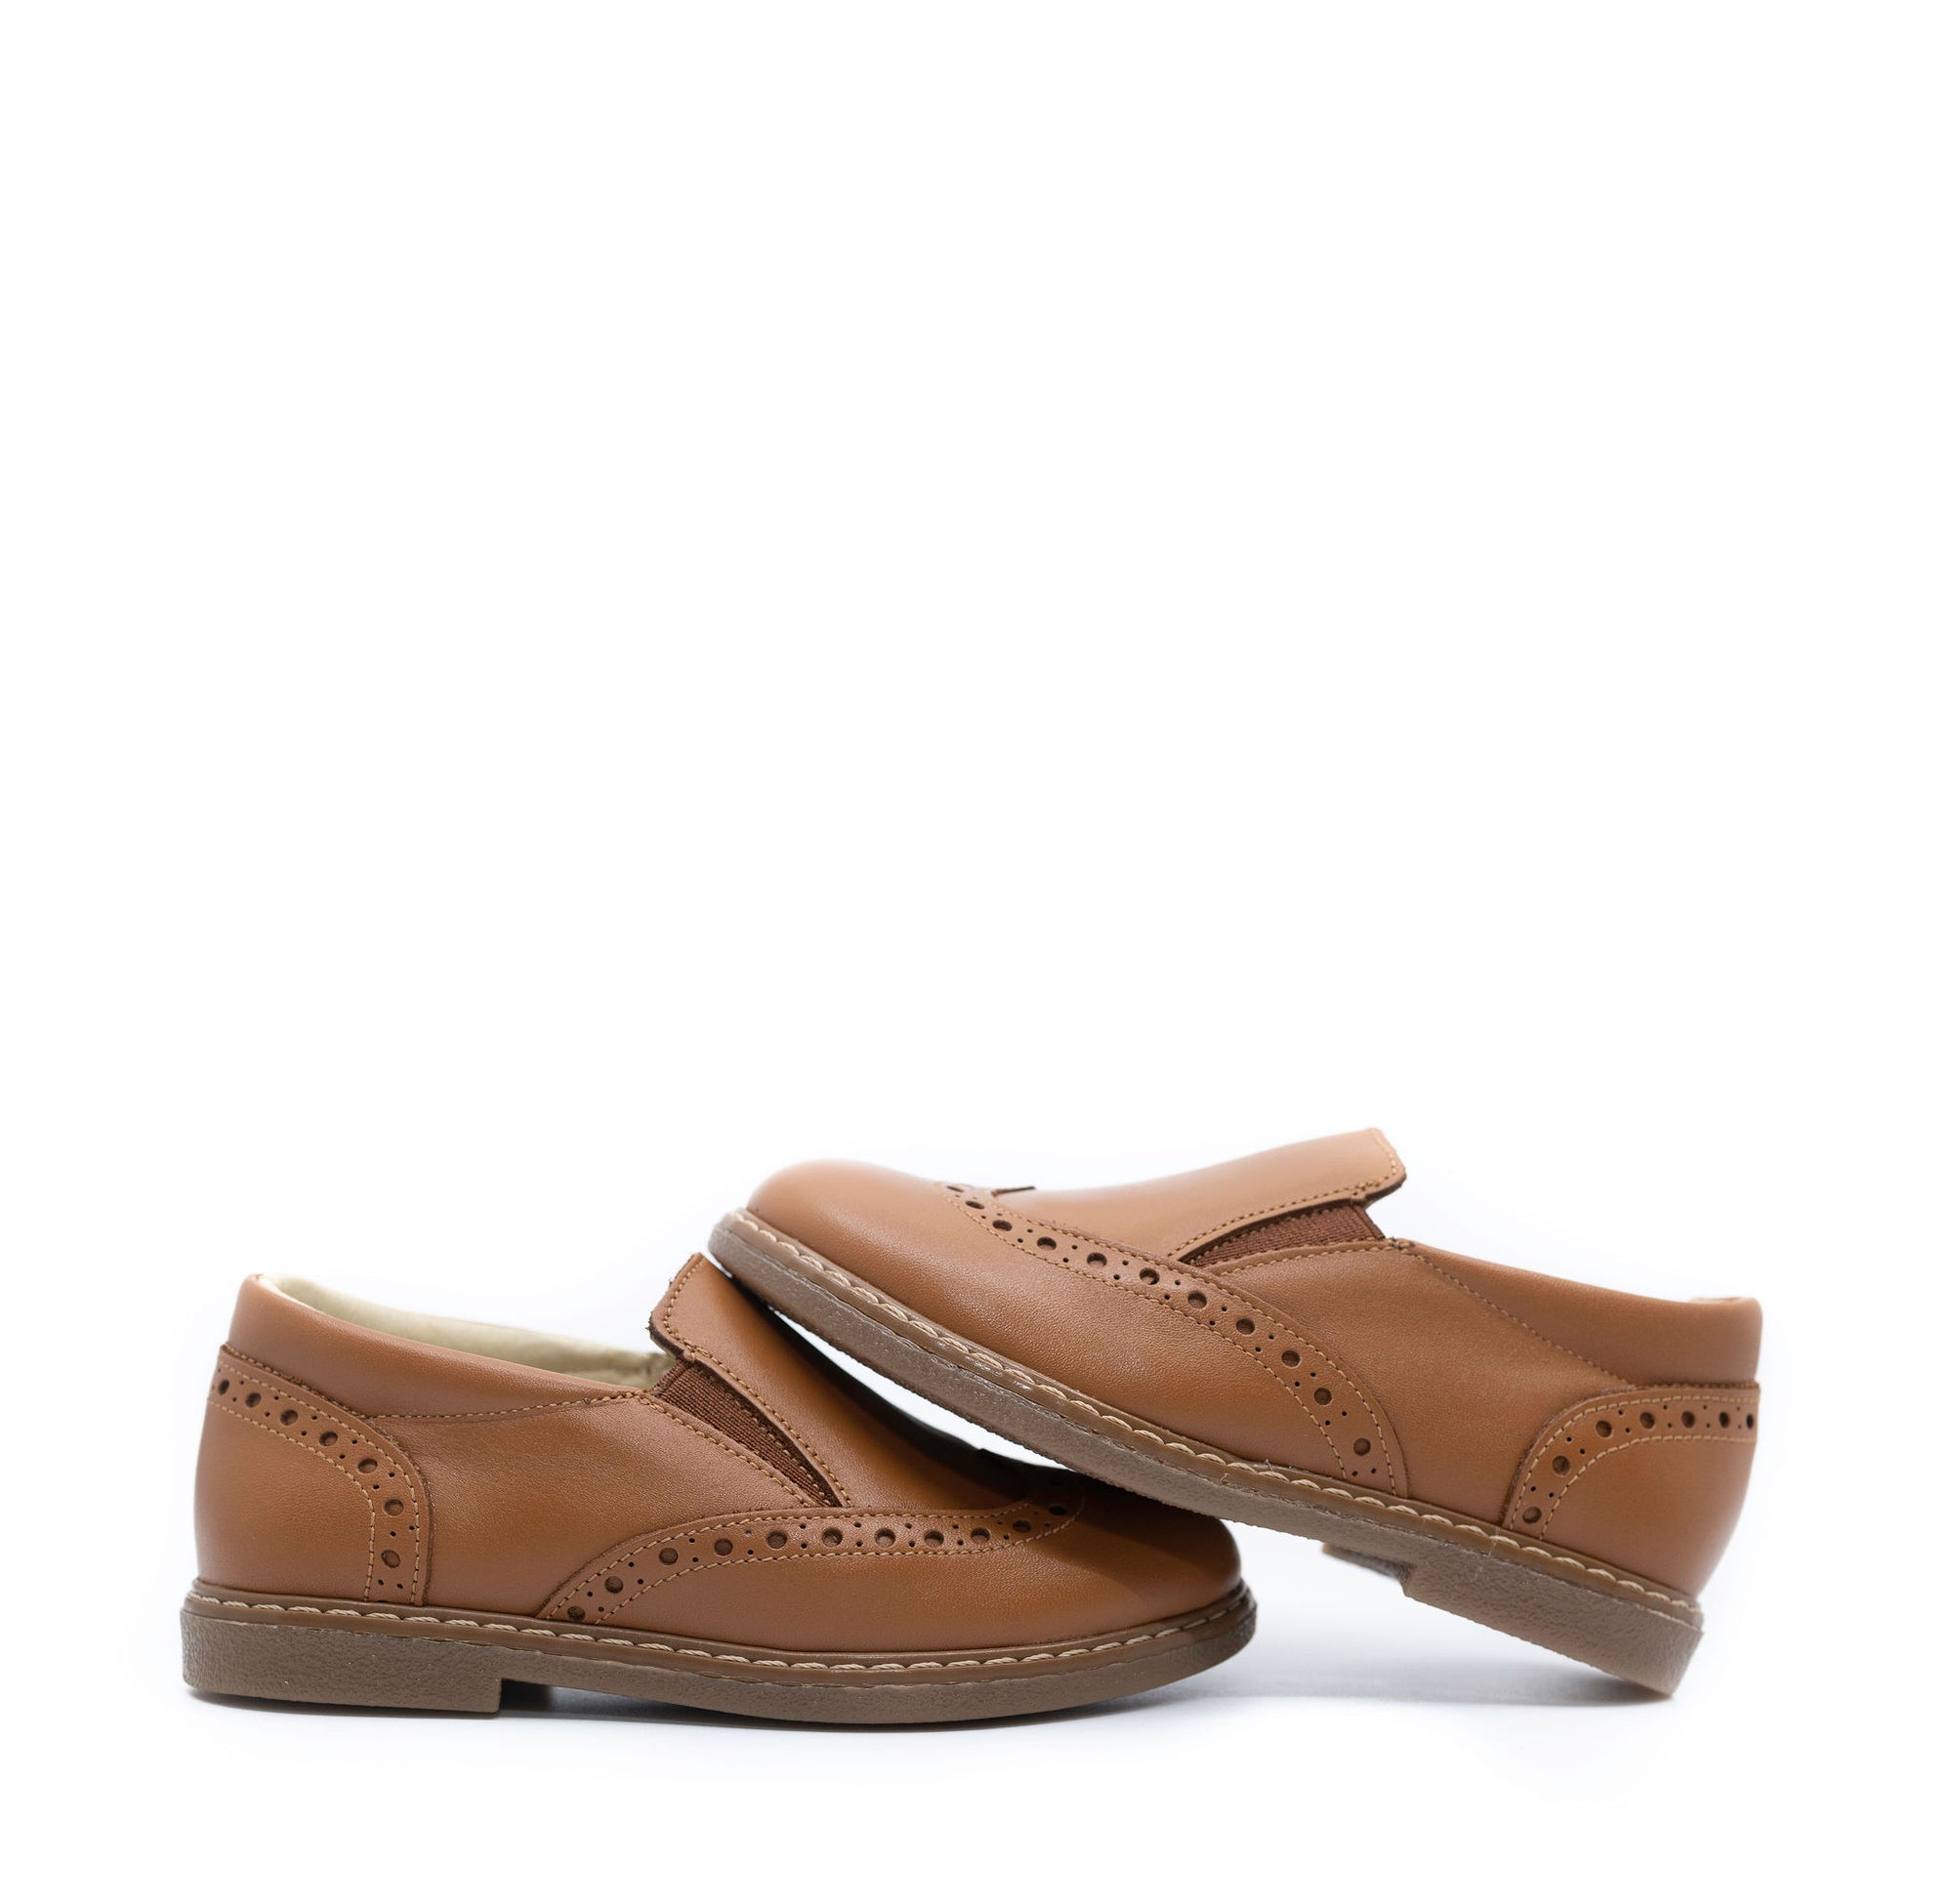 Blublonc Cuero Wingtip Slip On Loafer-Tassel Children Shoes